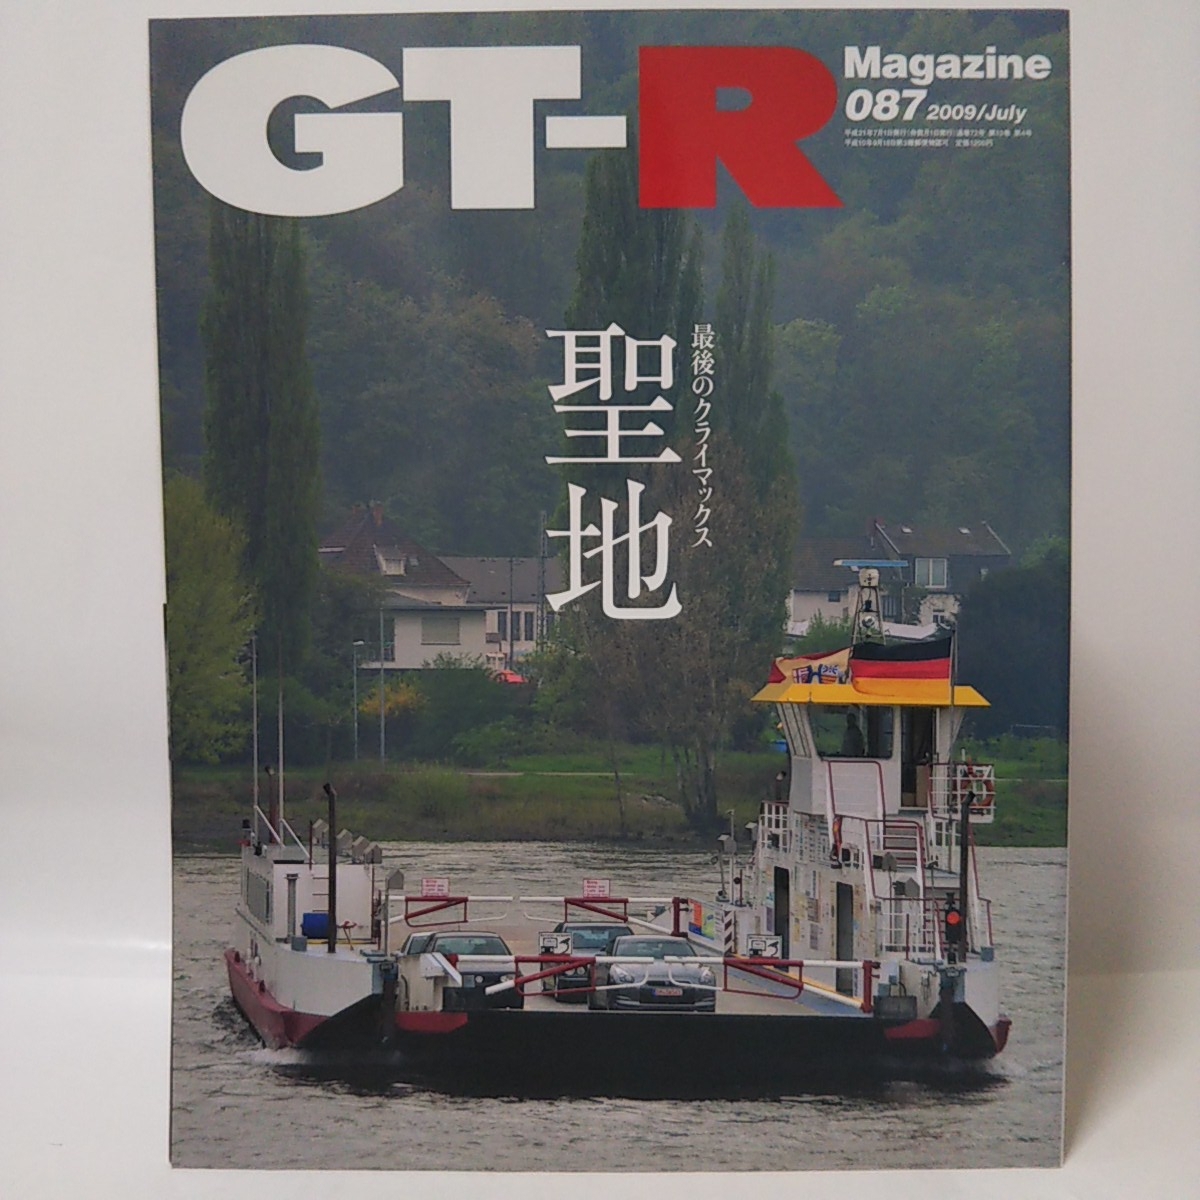 GT-Rマガジン #87 087 聖地へ ドイツの空が泣いていた 日産 スカイライン GT-R R32 R33 R34 nismo magazine 本_画像1